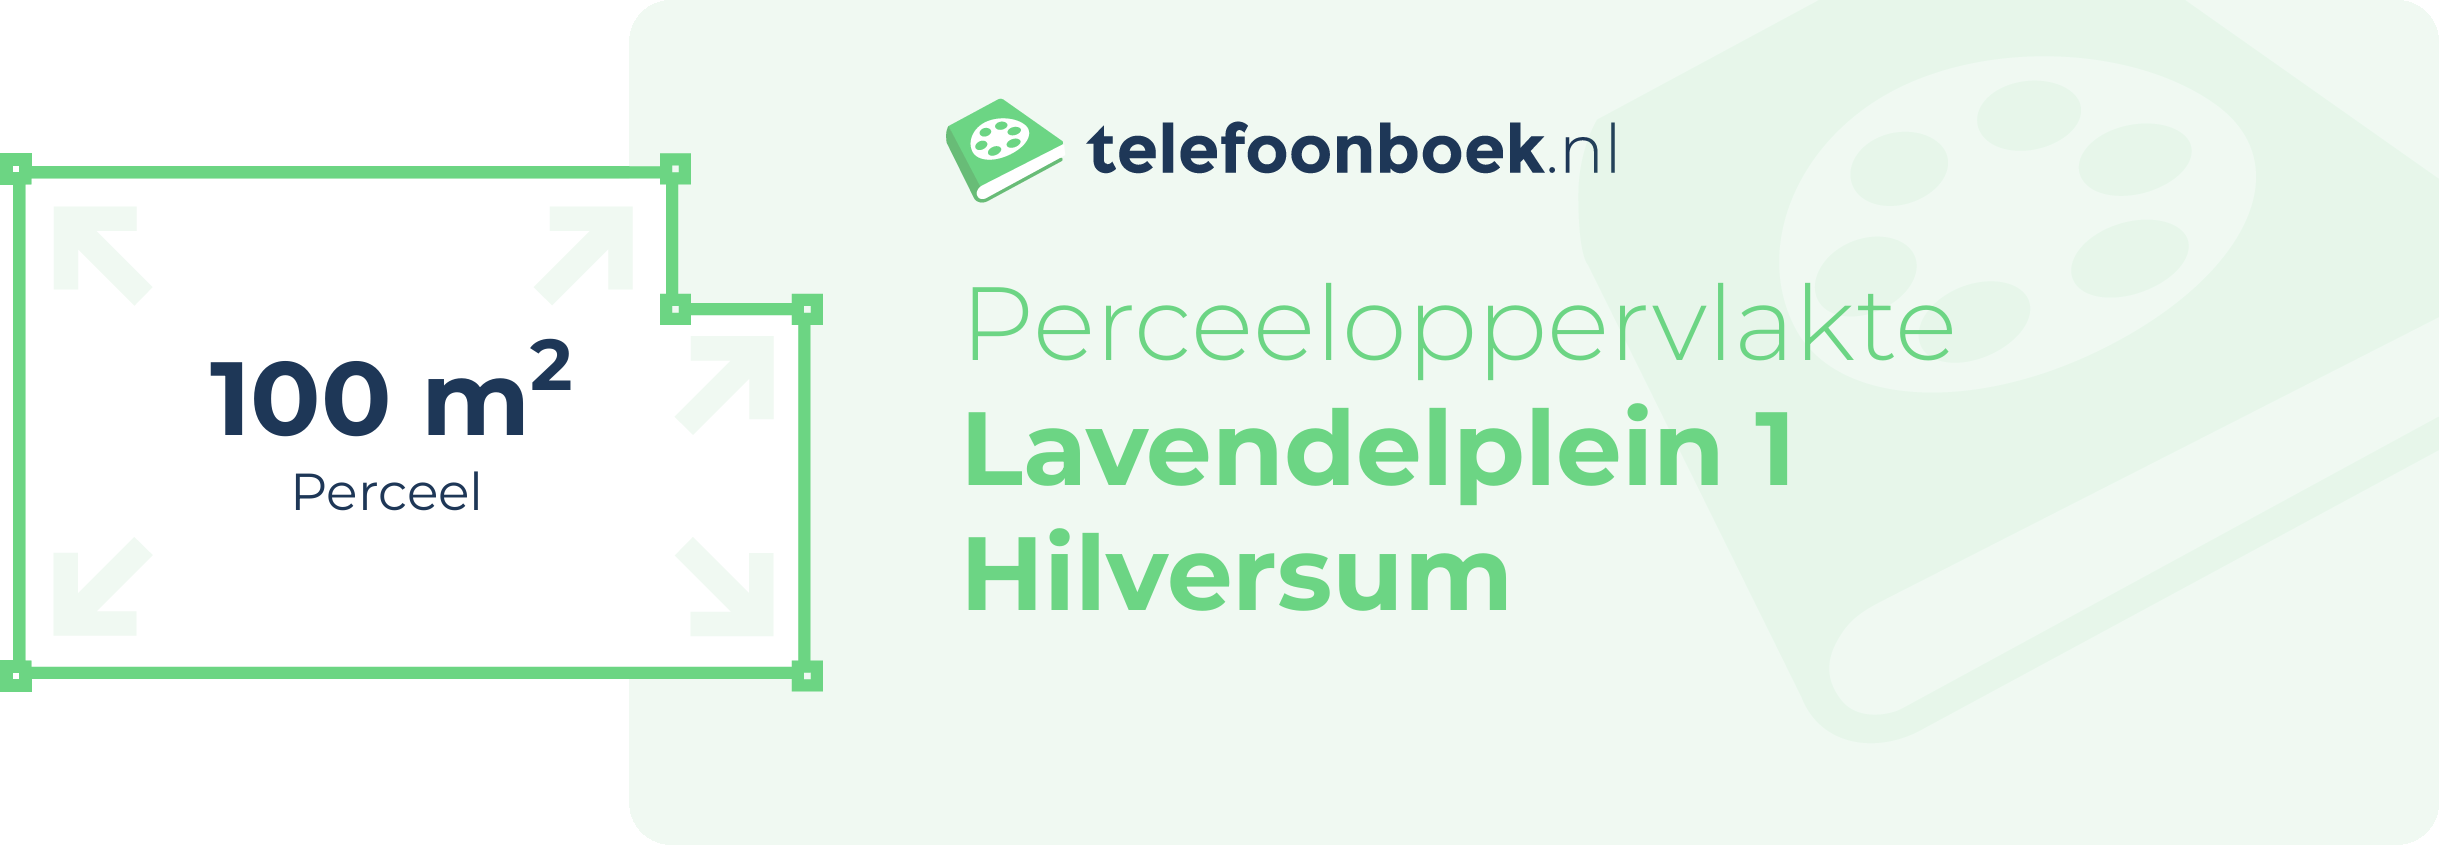 Perceeloppervlakte Lavendelplein 1 Hilversum